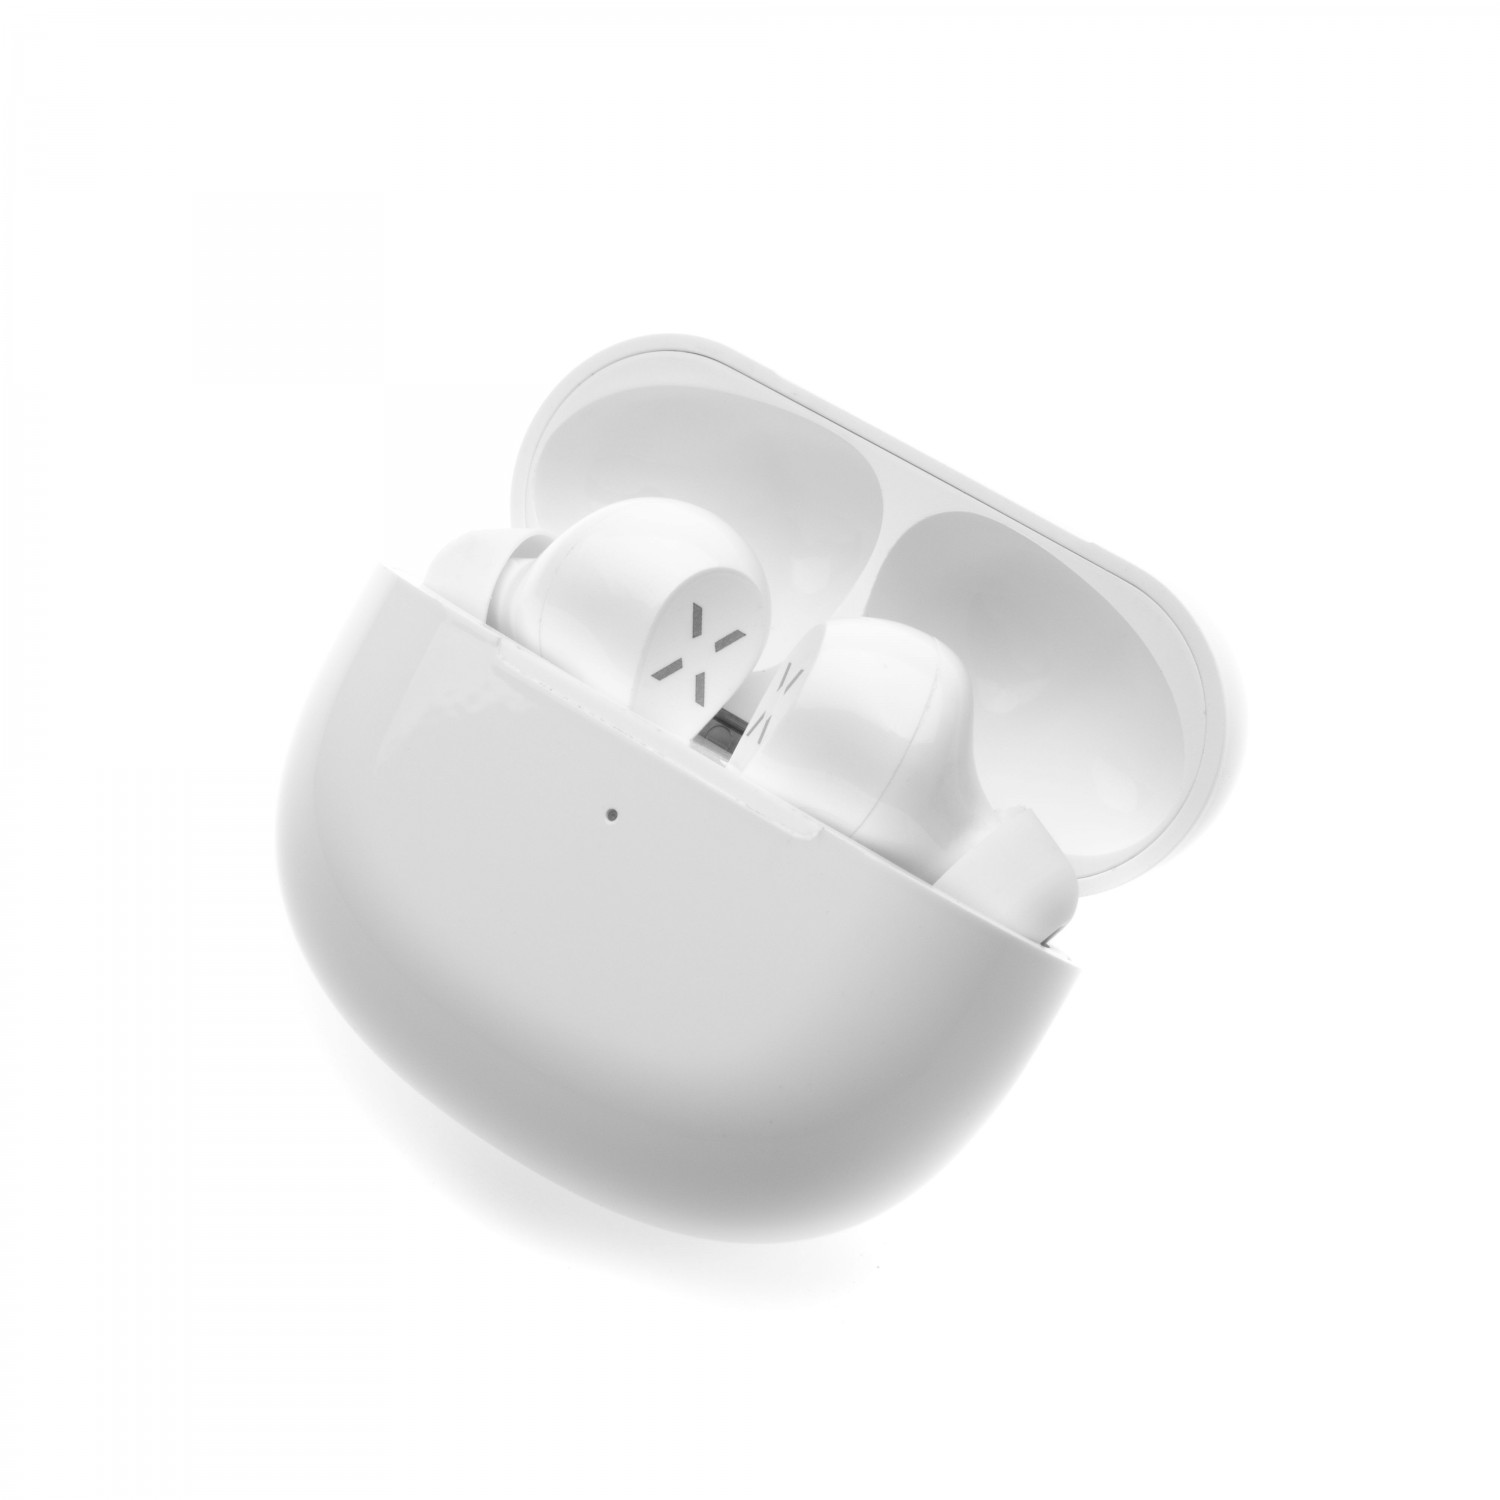 TWS sluchátka FIXED Boom Pods 2 s bezdrátovým nabíjením, bílá